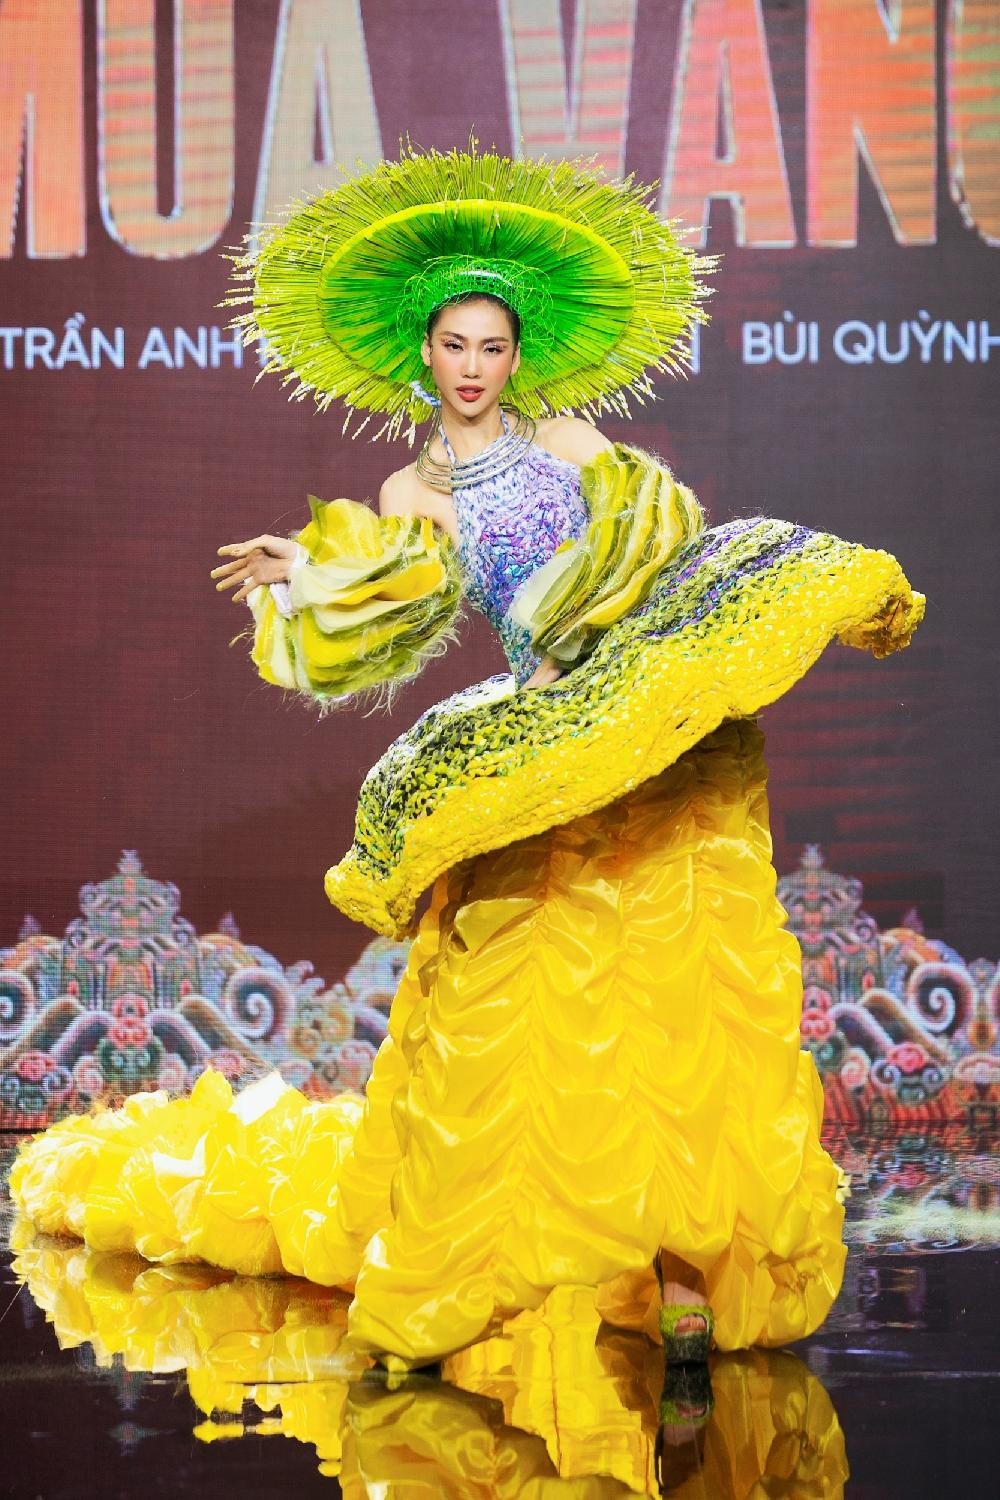 Thiết kế nào được chọn làm Trang phục Dân tộc cho tân Hoa hậu Hoàn vũ Việt Nam? ảnh 14